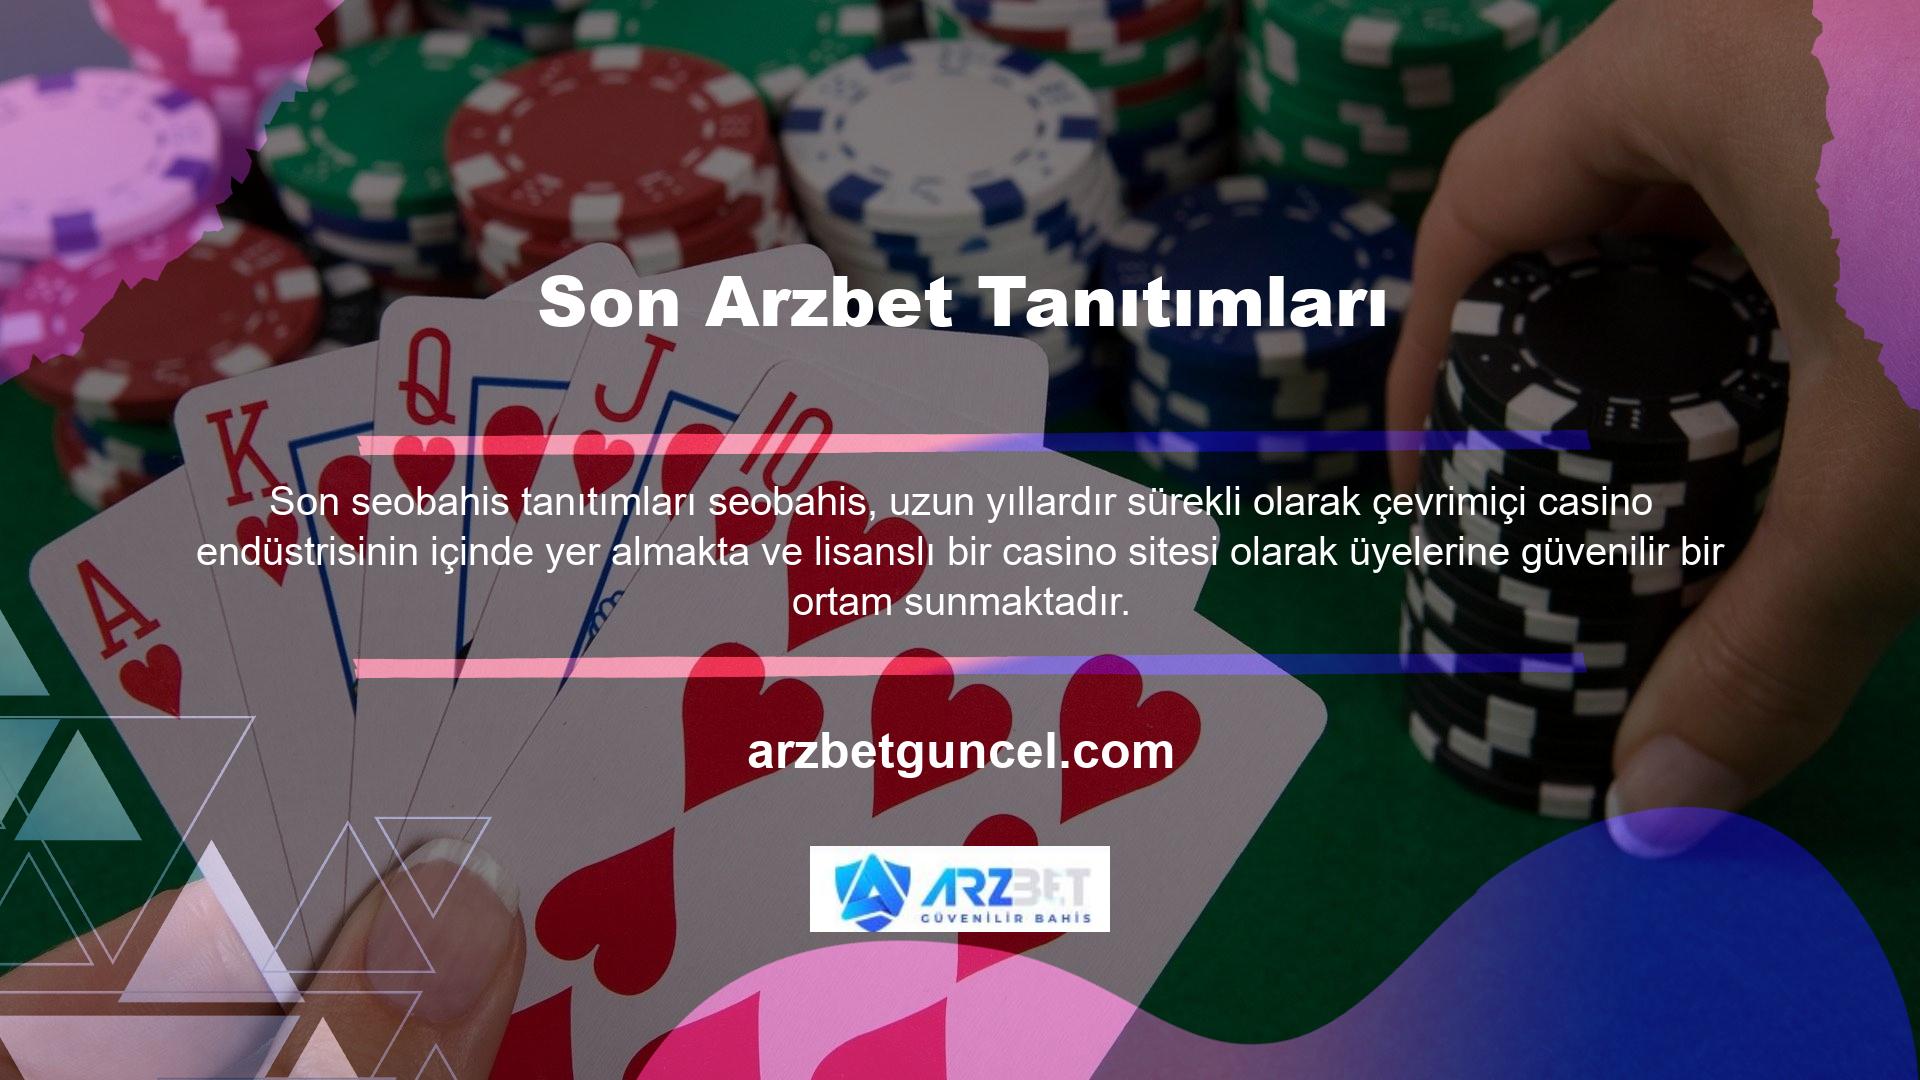 Dolandırıcılık sitelerinin sayısının arttığı casino sektöründe sıkı şartlar altında lisanslanan Arzbet, her türlü işlemi sorunsuz bir şekilde gerçekleştirebilmektedir